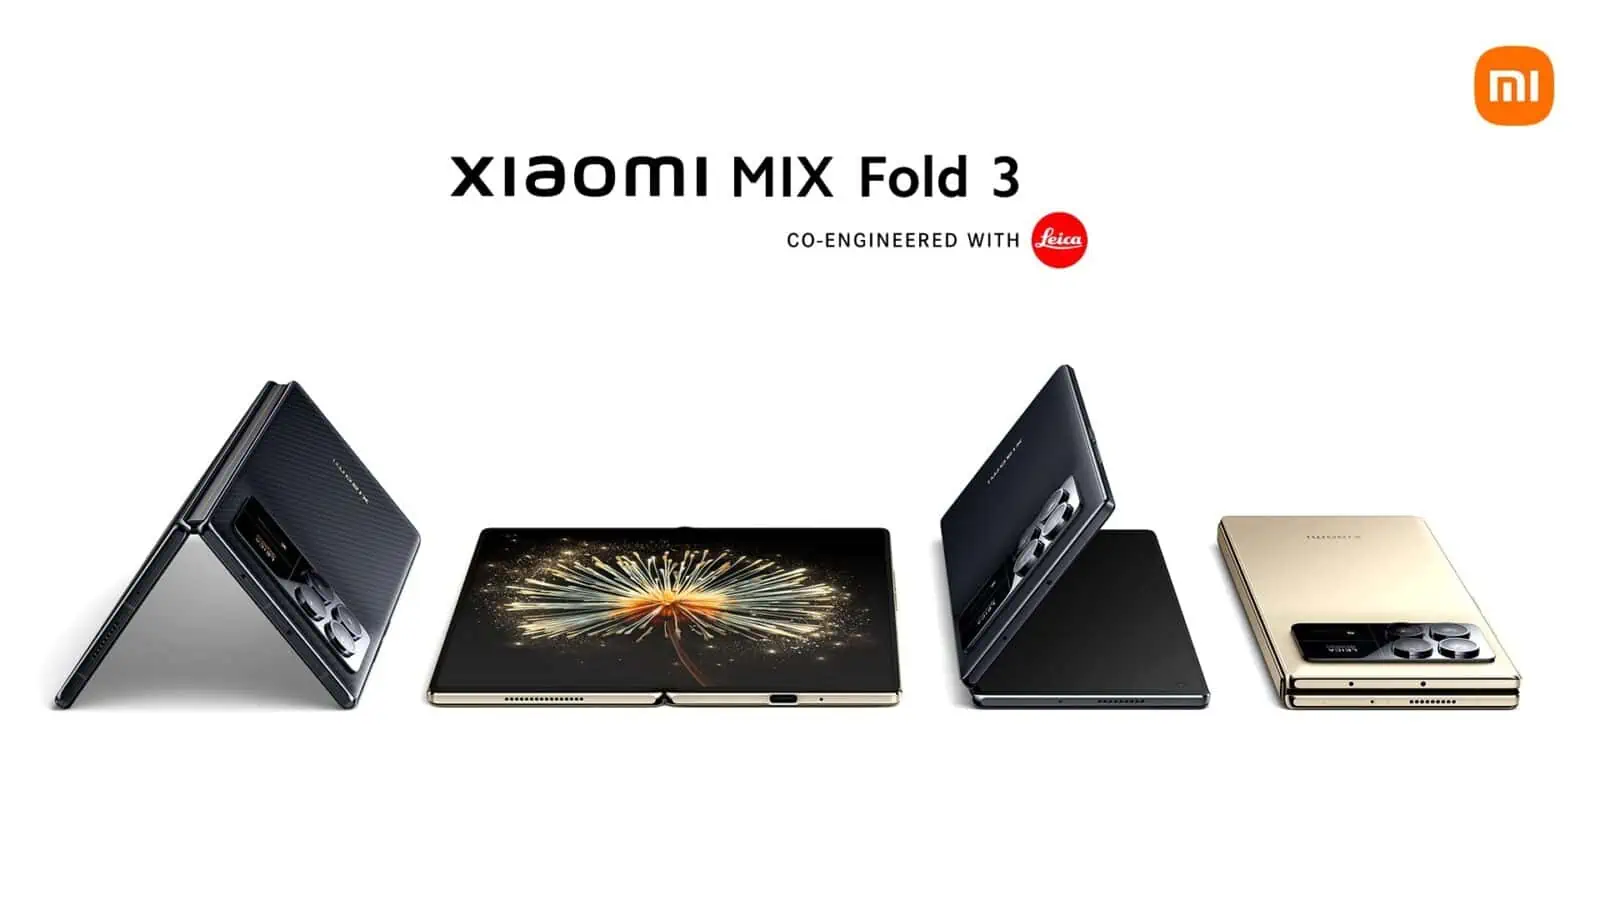 portfolio smartphone herstellern, modell Xiaomi Fold 3 empfehlung marken mi und redmi verkauf 2023